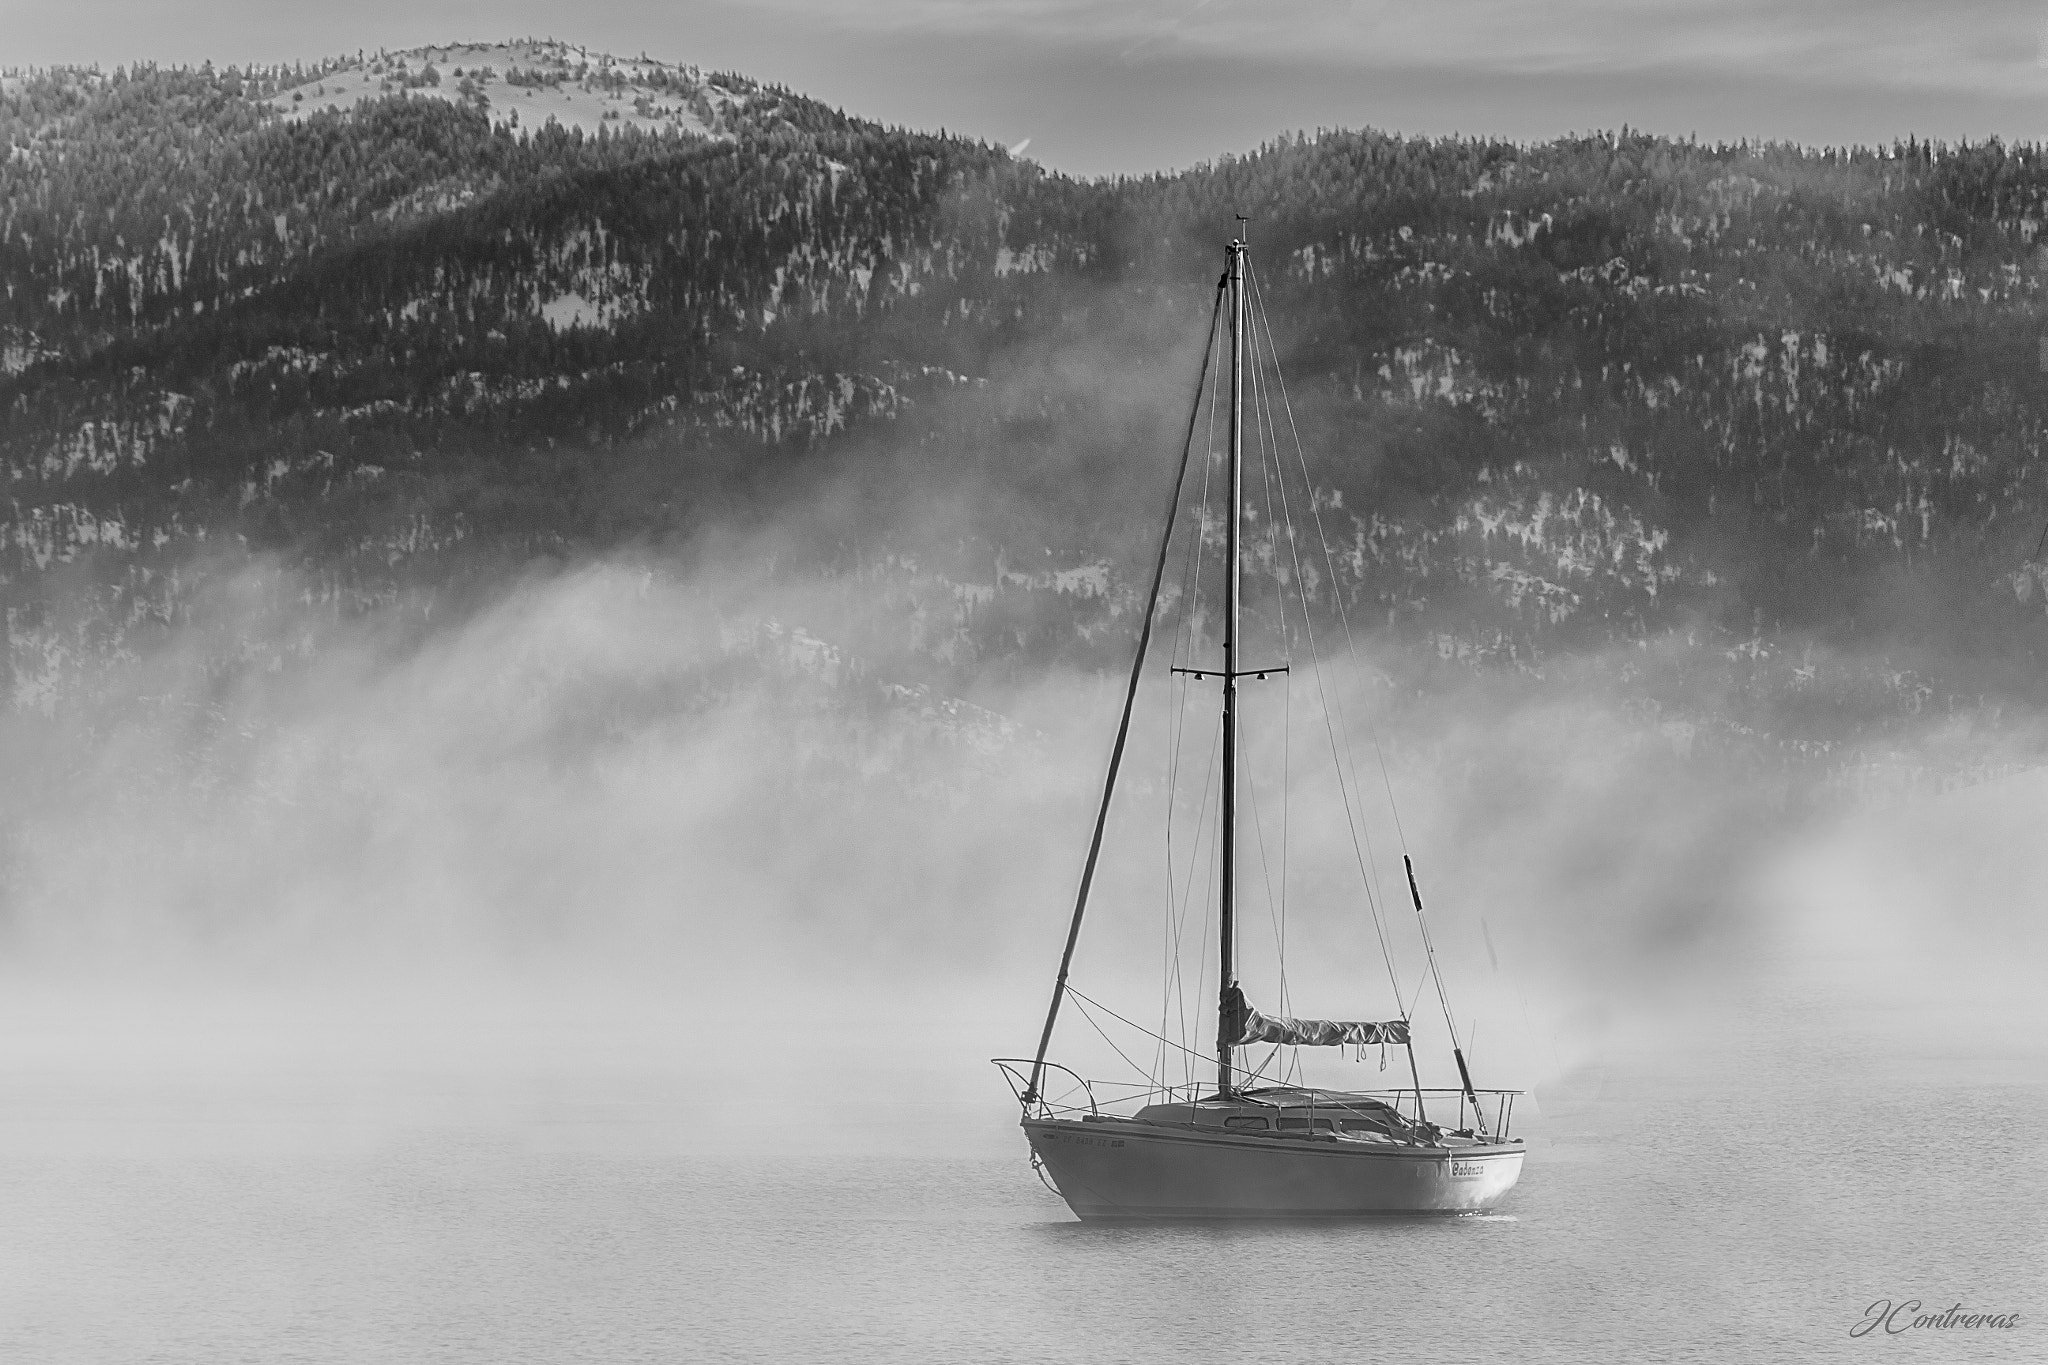 Canon EOS 60D sample photo. Un bote en la niebla de la mañana... photography